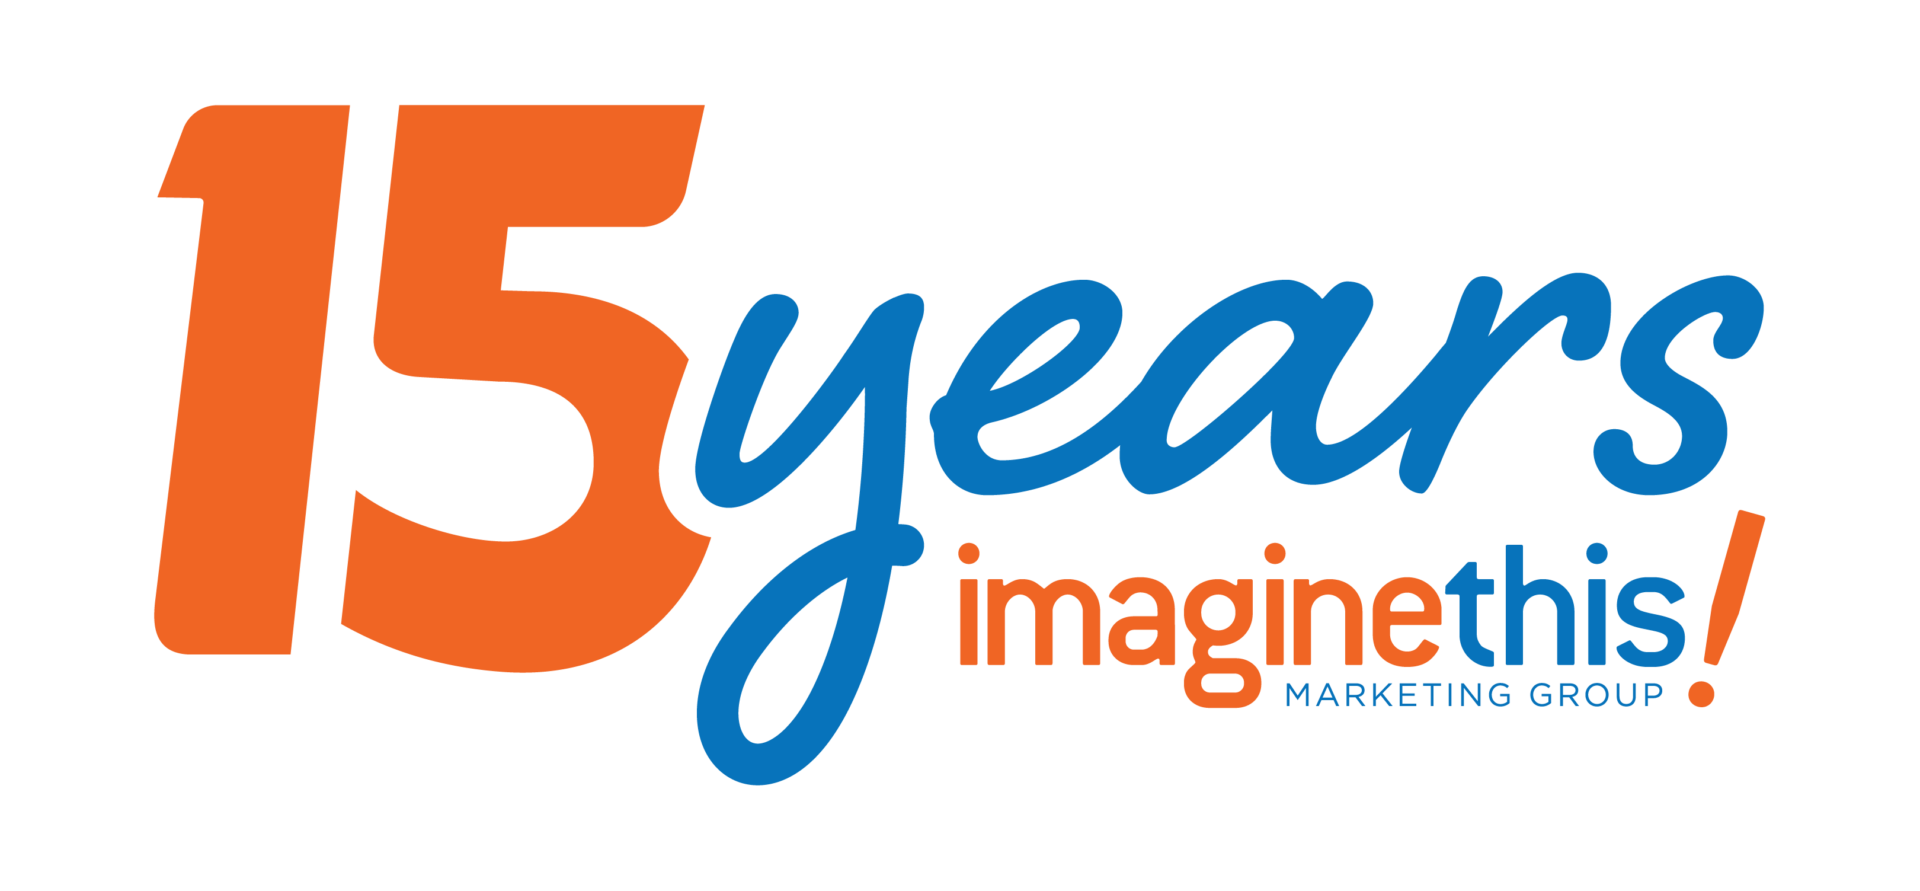 Imagine This! Marketing Group 15 Years